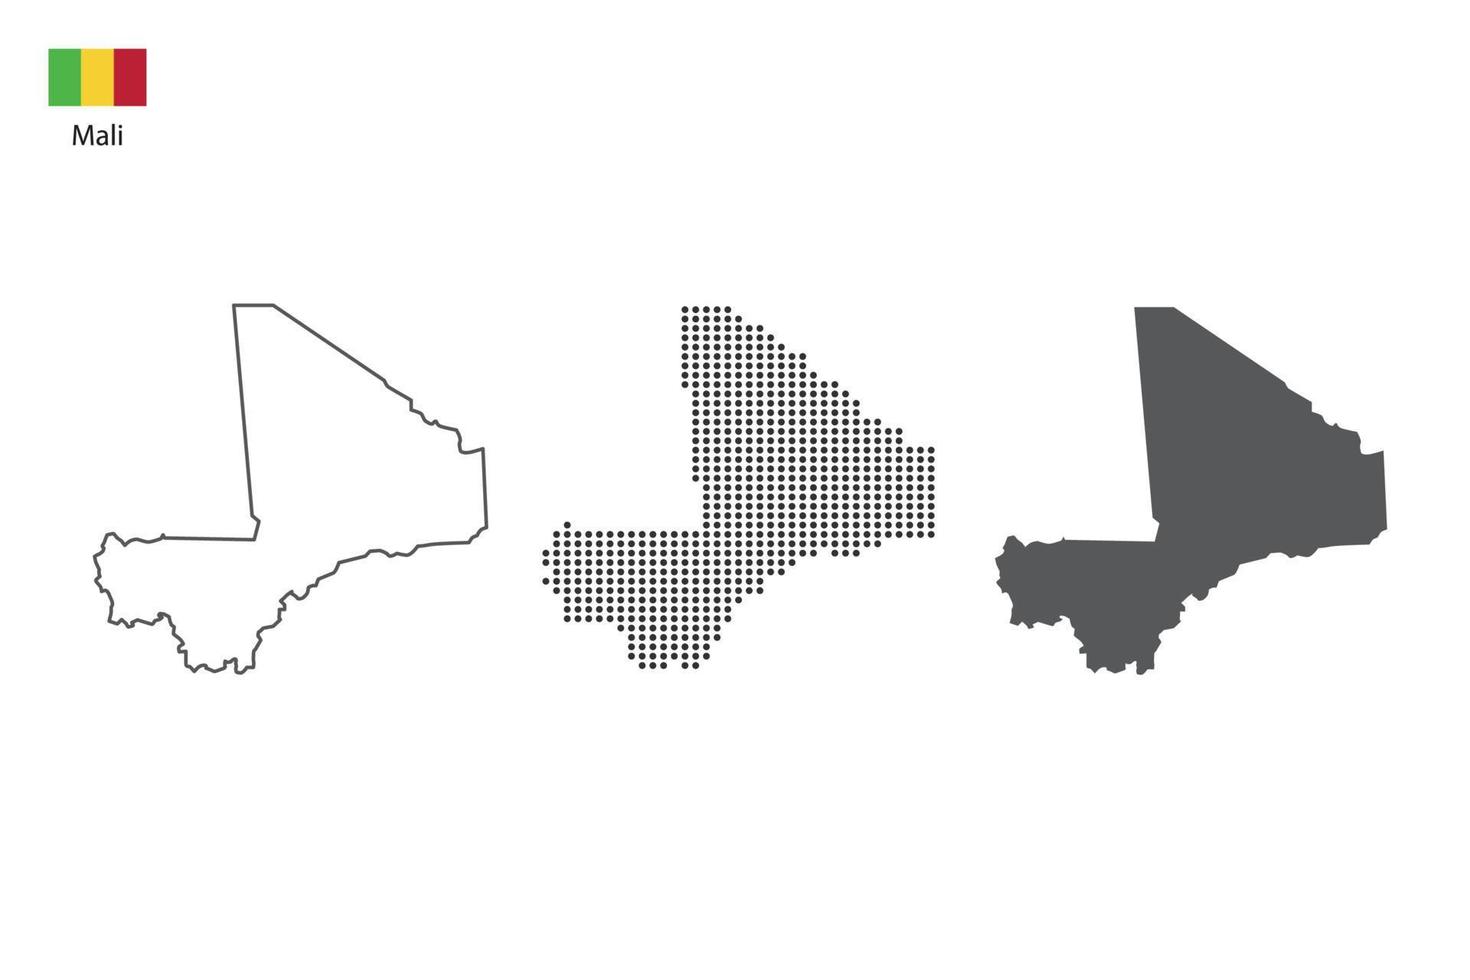 3 versões do vetor da cidade do mapa do mali por estilo de simplicidade de contorno preto fino, estilo de ponto preto e estilo de sombra escura. tudo no fundo branco.